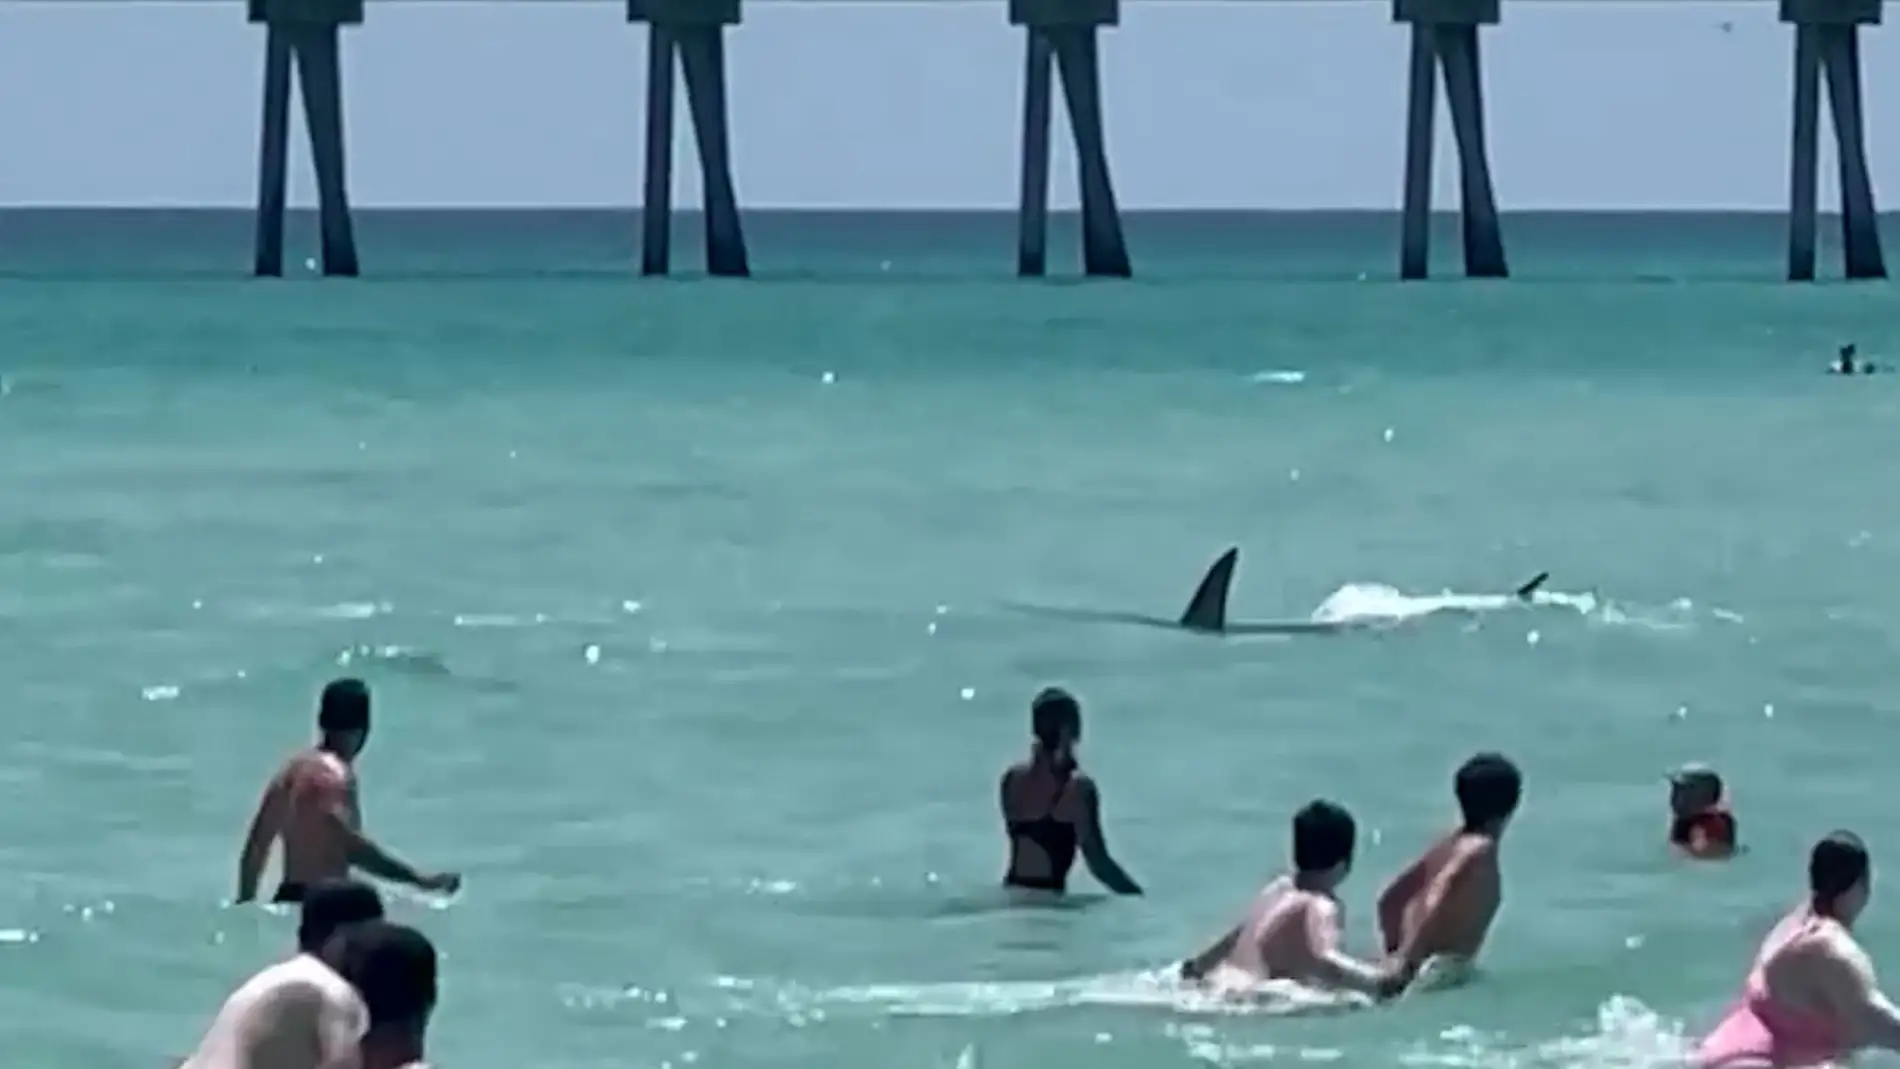 Un tiburón asusta a los bañistas